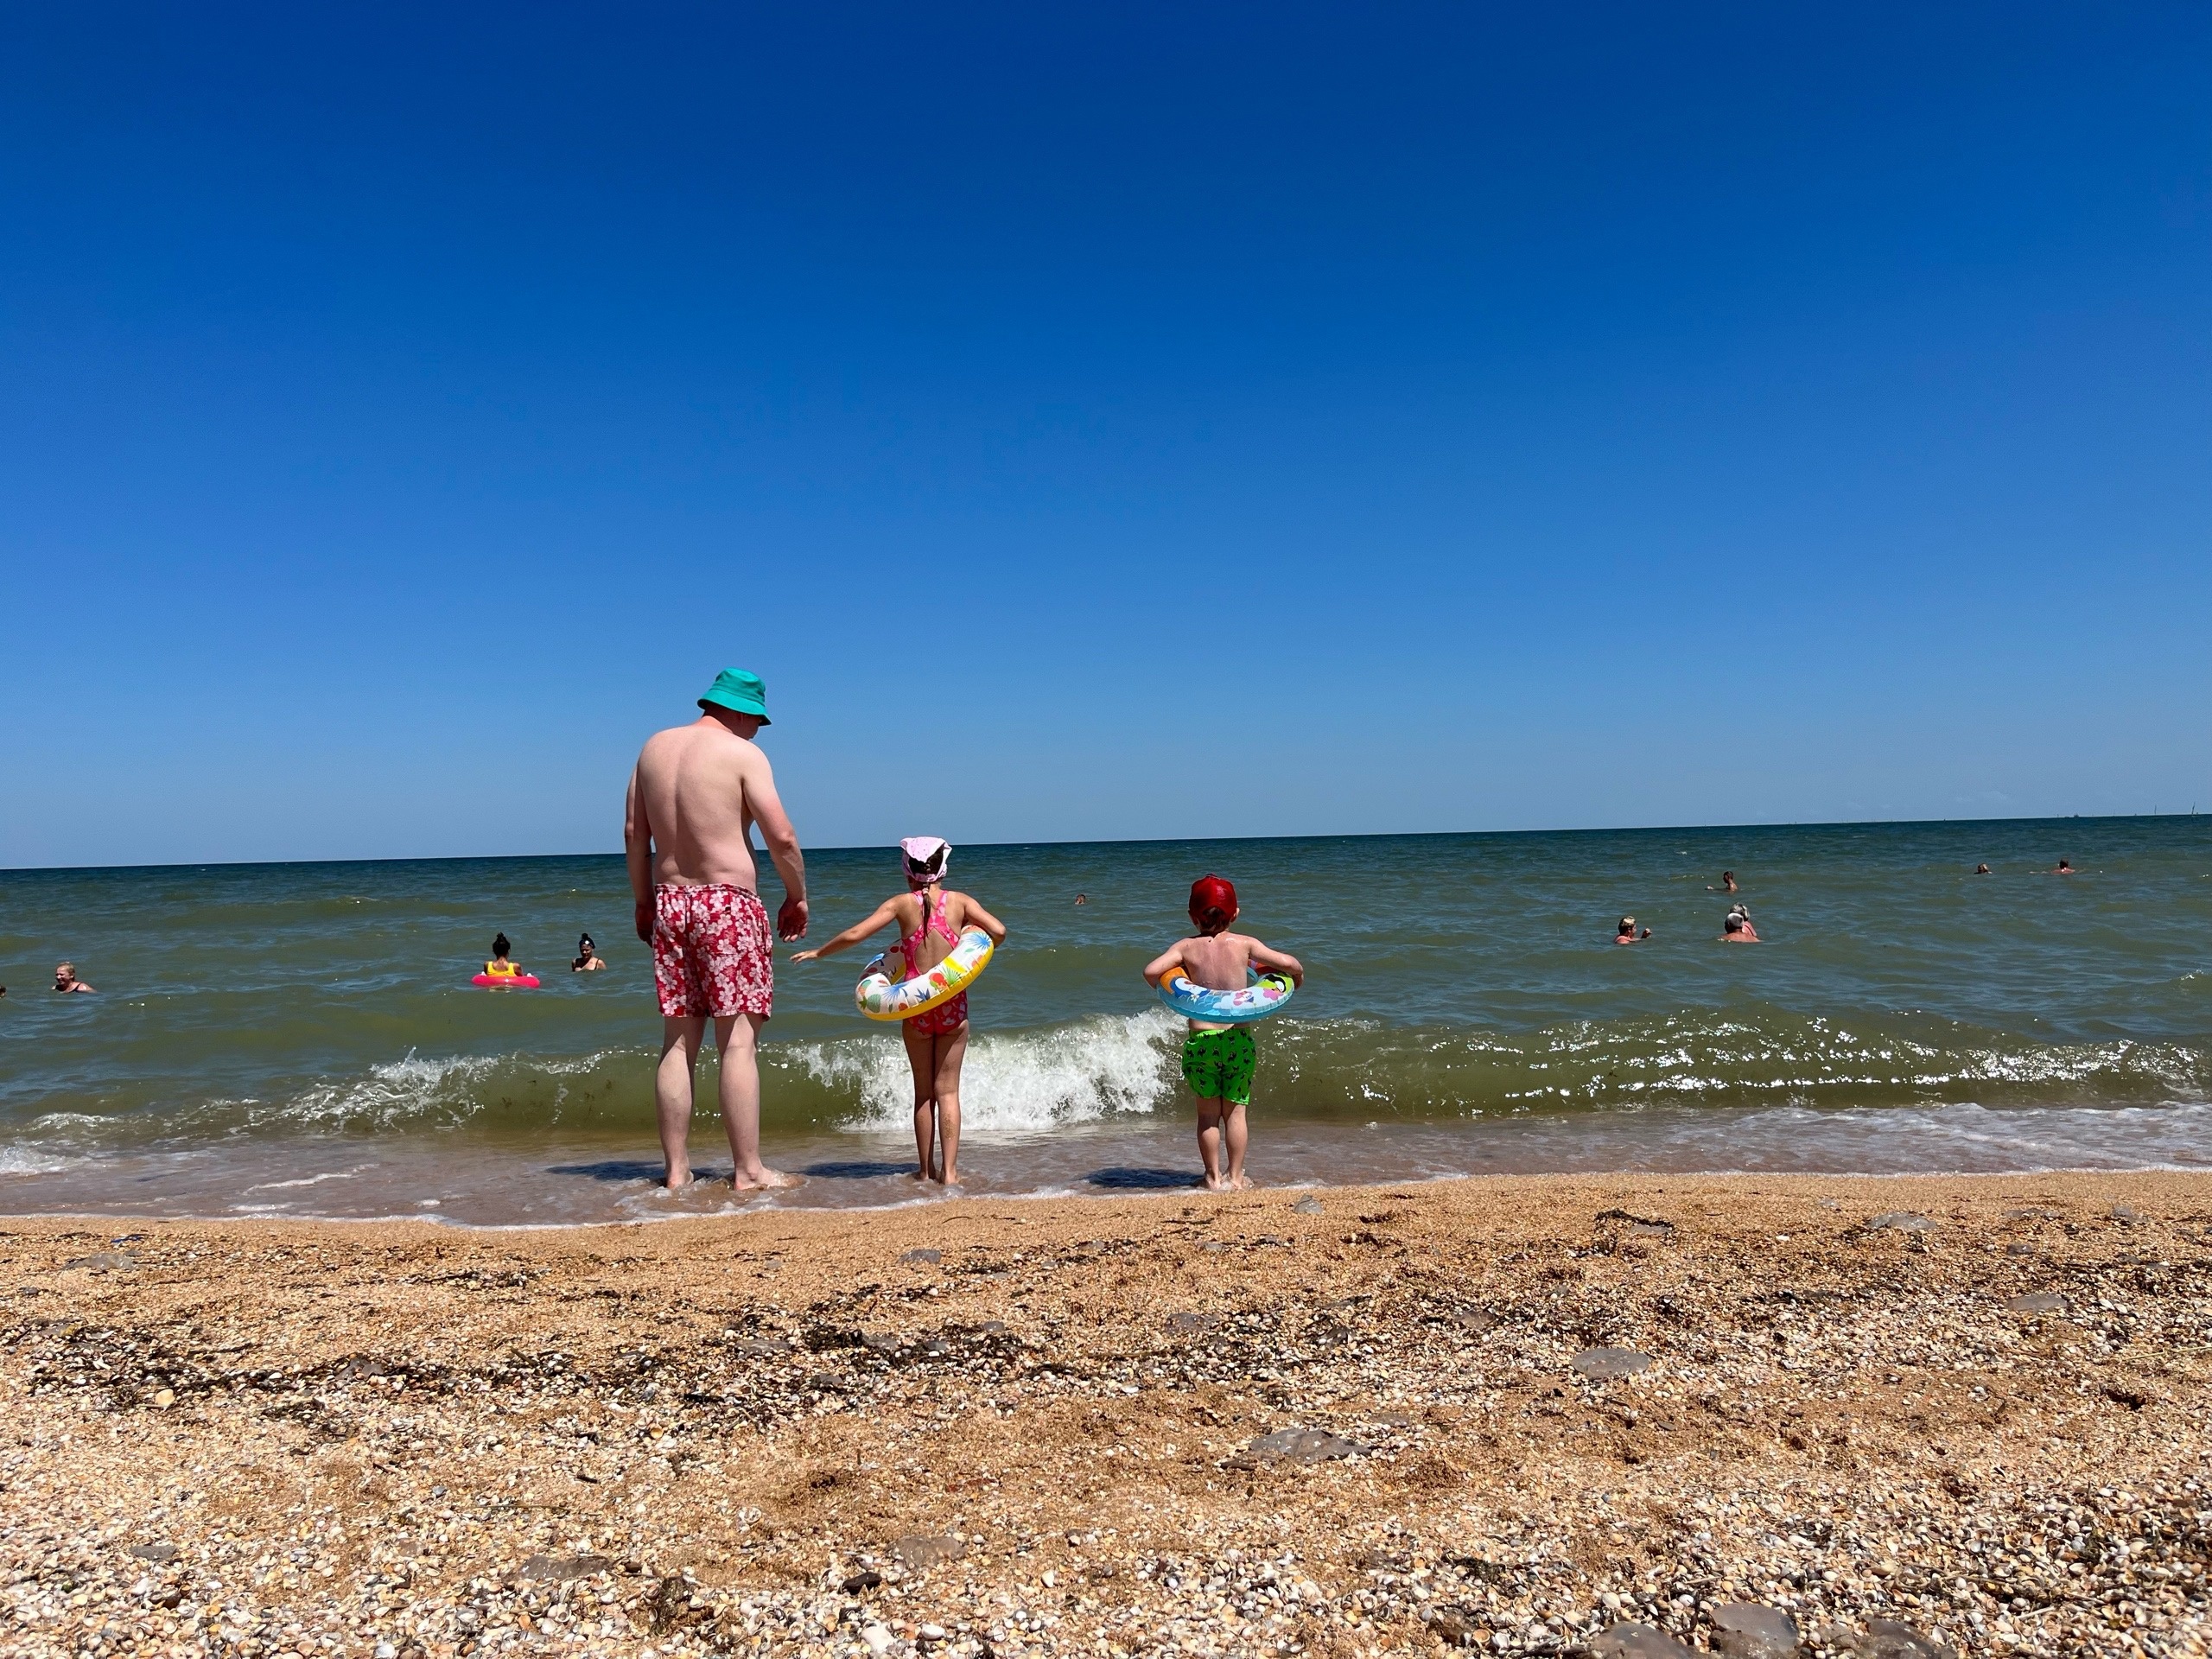 "Купаться невозможно, мы все сидим на берегу": Черное море преподнесло гадкий сюрприз отдыхающим